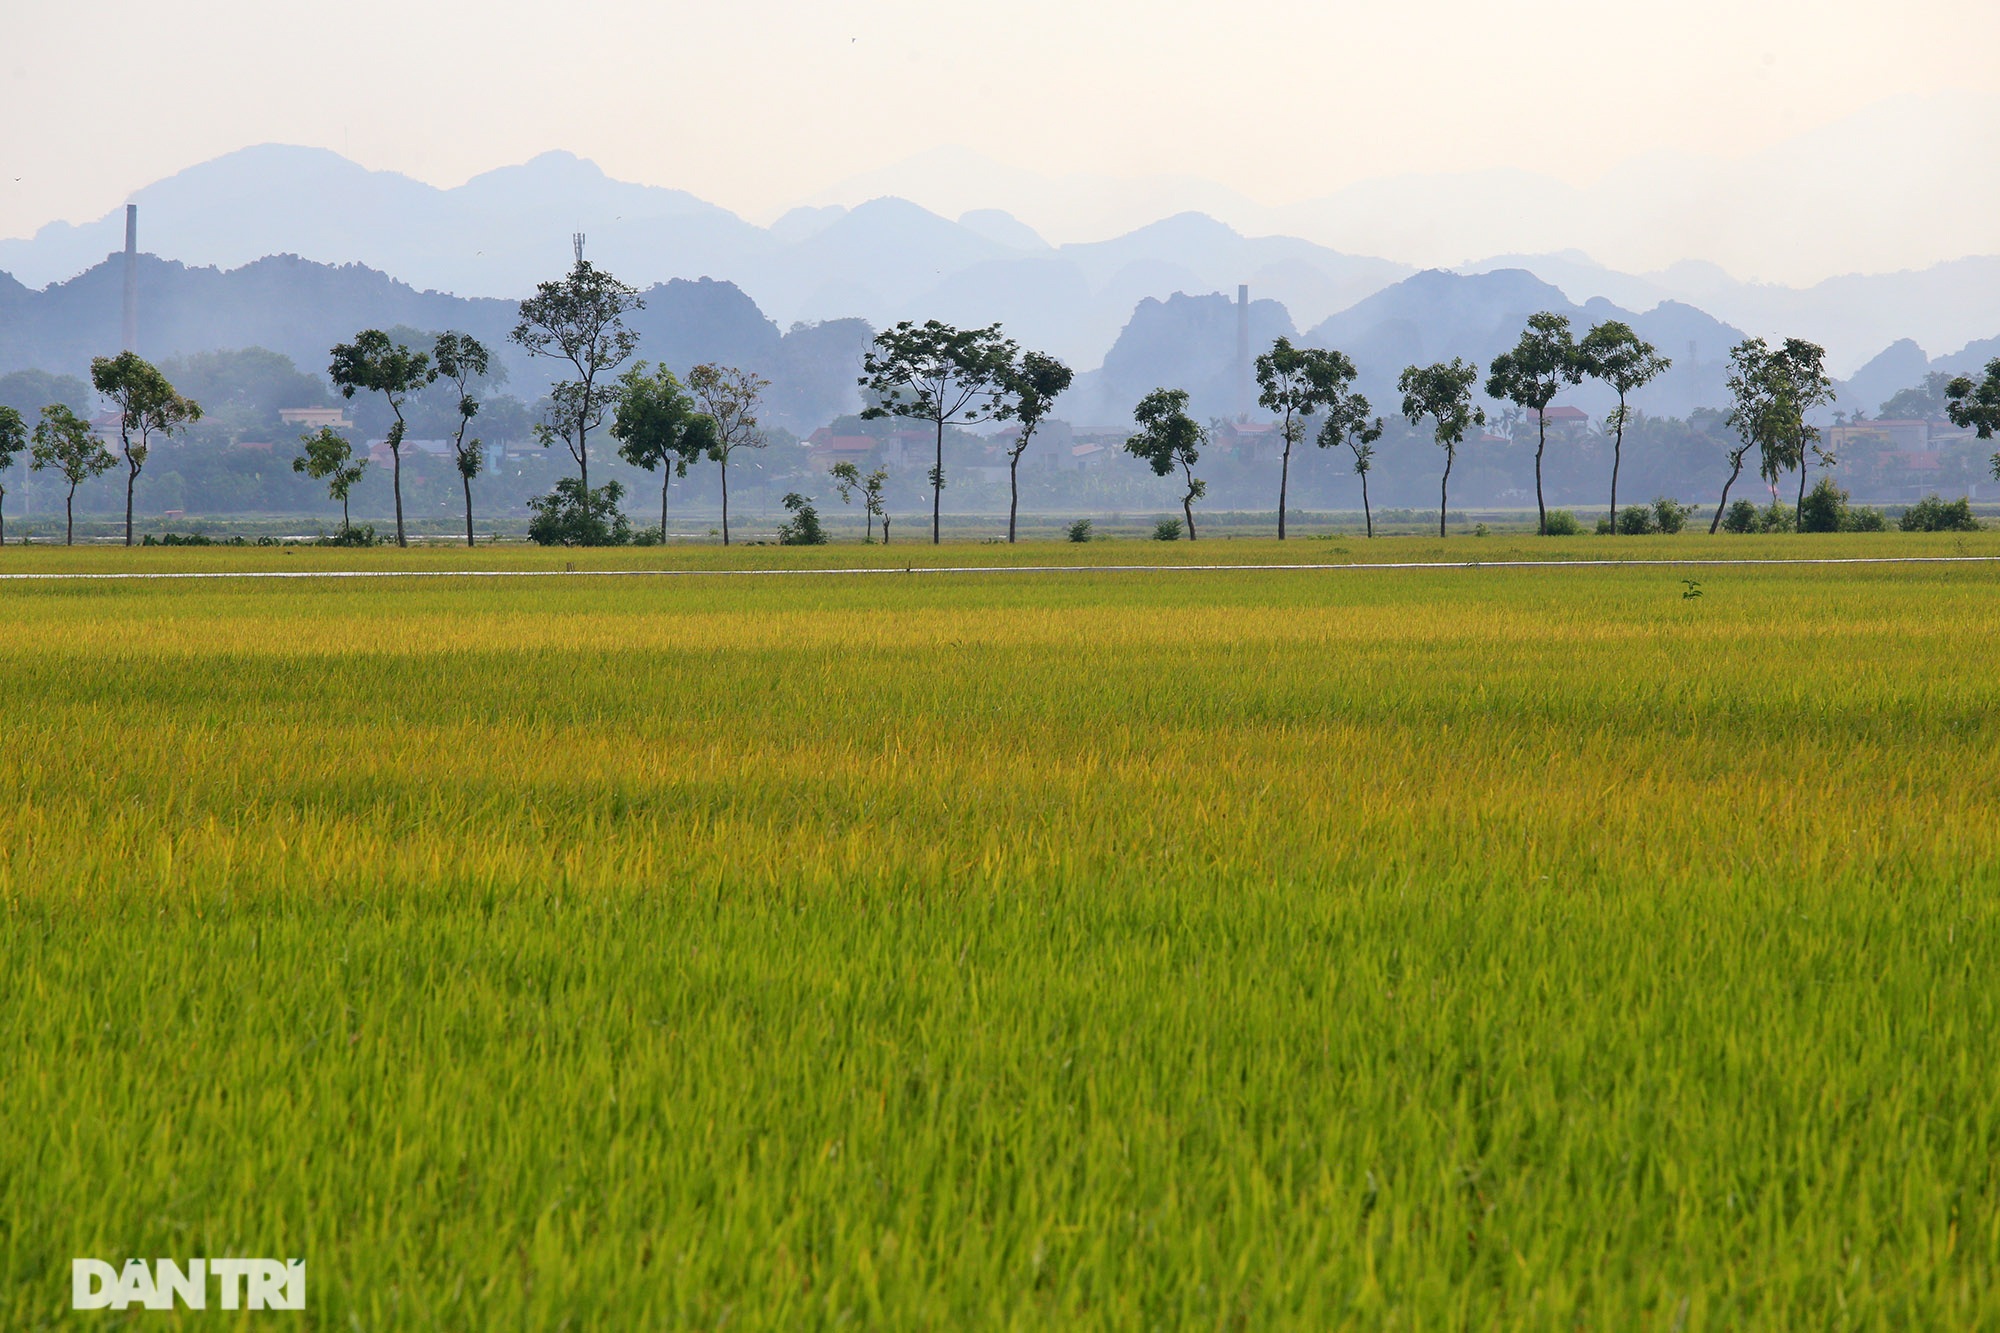 Mùa lúa chín là khoảnh khắc đáng nhớ nhất của người dân nông thôn Việt Nam. Nơi mà bức tranh thể hiện sức sống động dỗi của vùng đất vàng, của những đàn cò trắng lả tả bay giữa nắng. Hãy cùng chiêm ngưỡng những góc ảnh này để khiến trái tim bạn rung động.